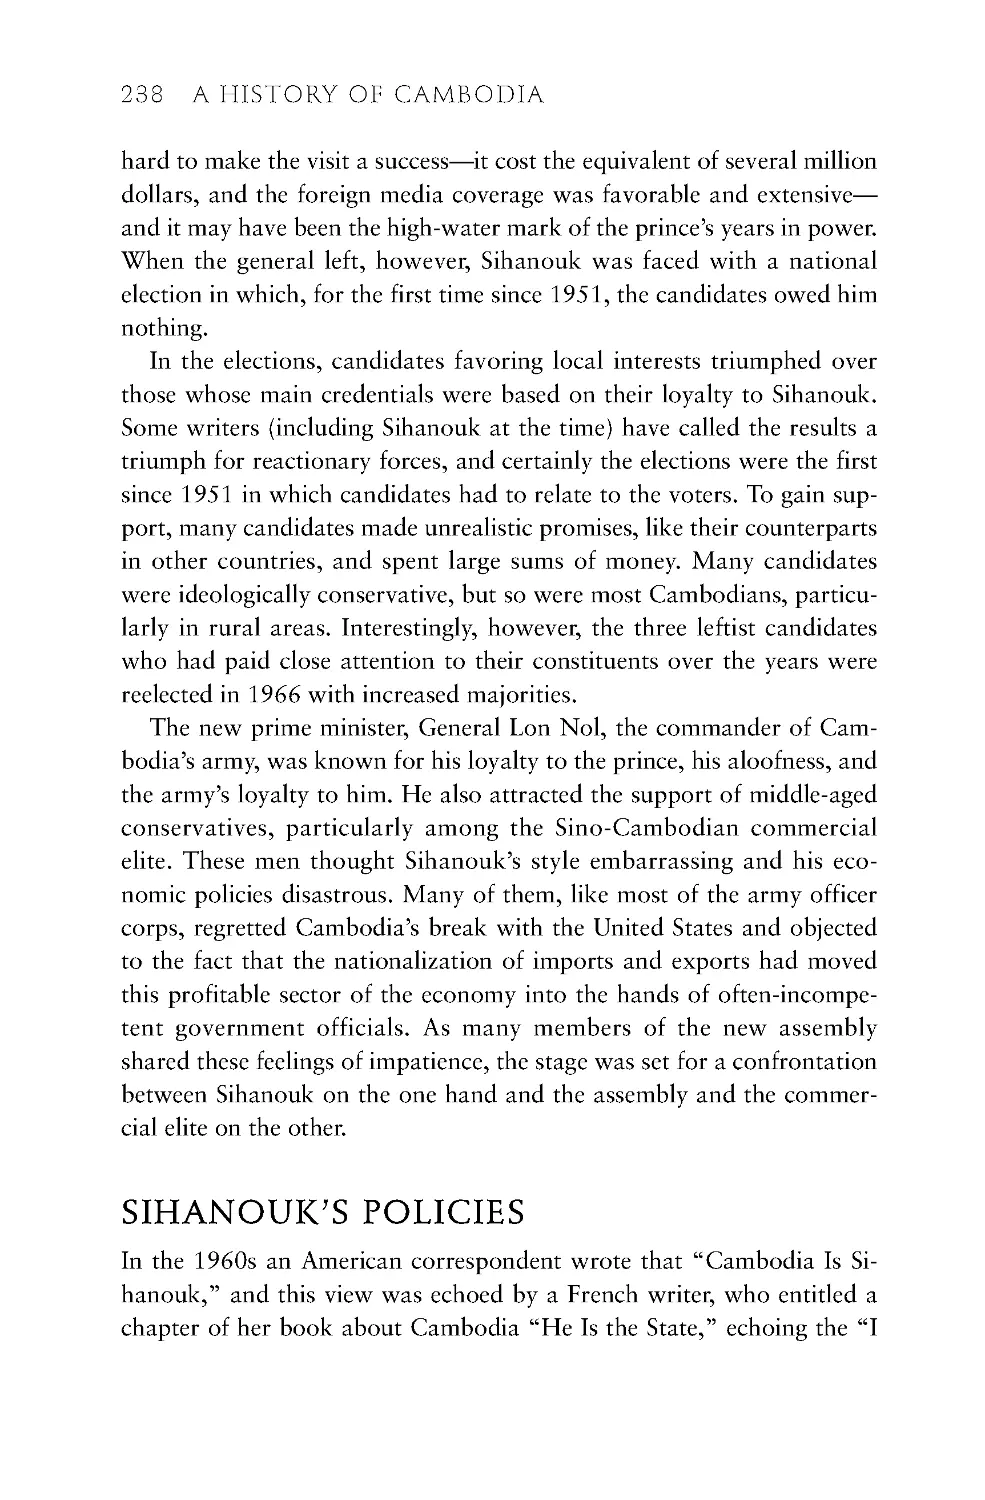 Sihanouk's Policies